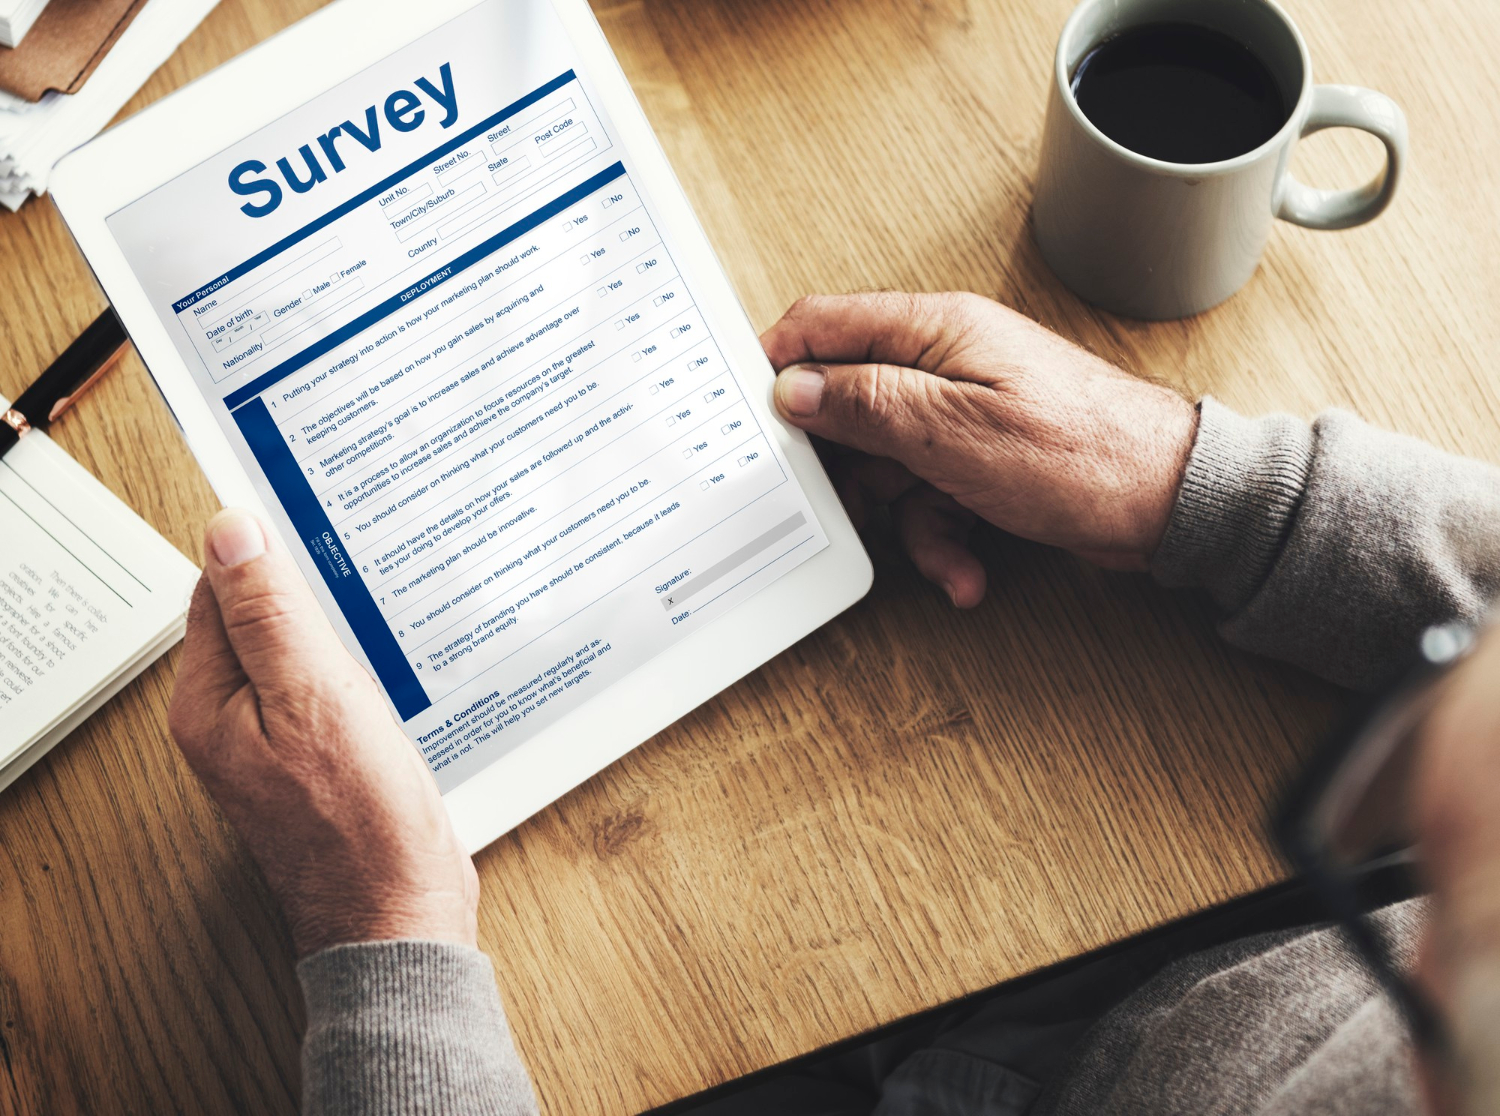 Survei adalah salah satu cara mendapatkan feedback dari karyawan atau konsumen.